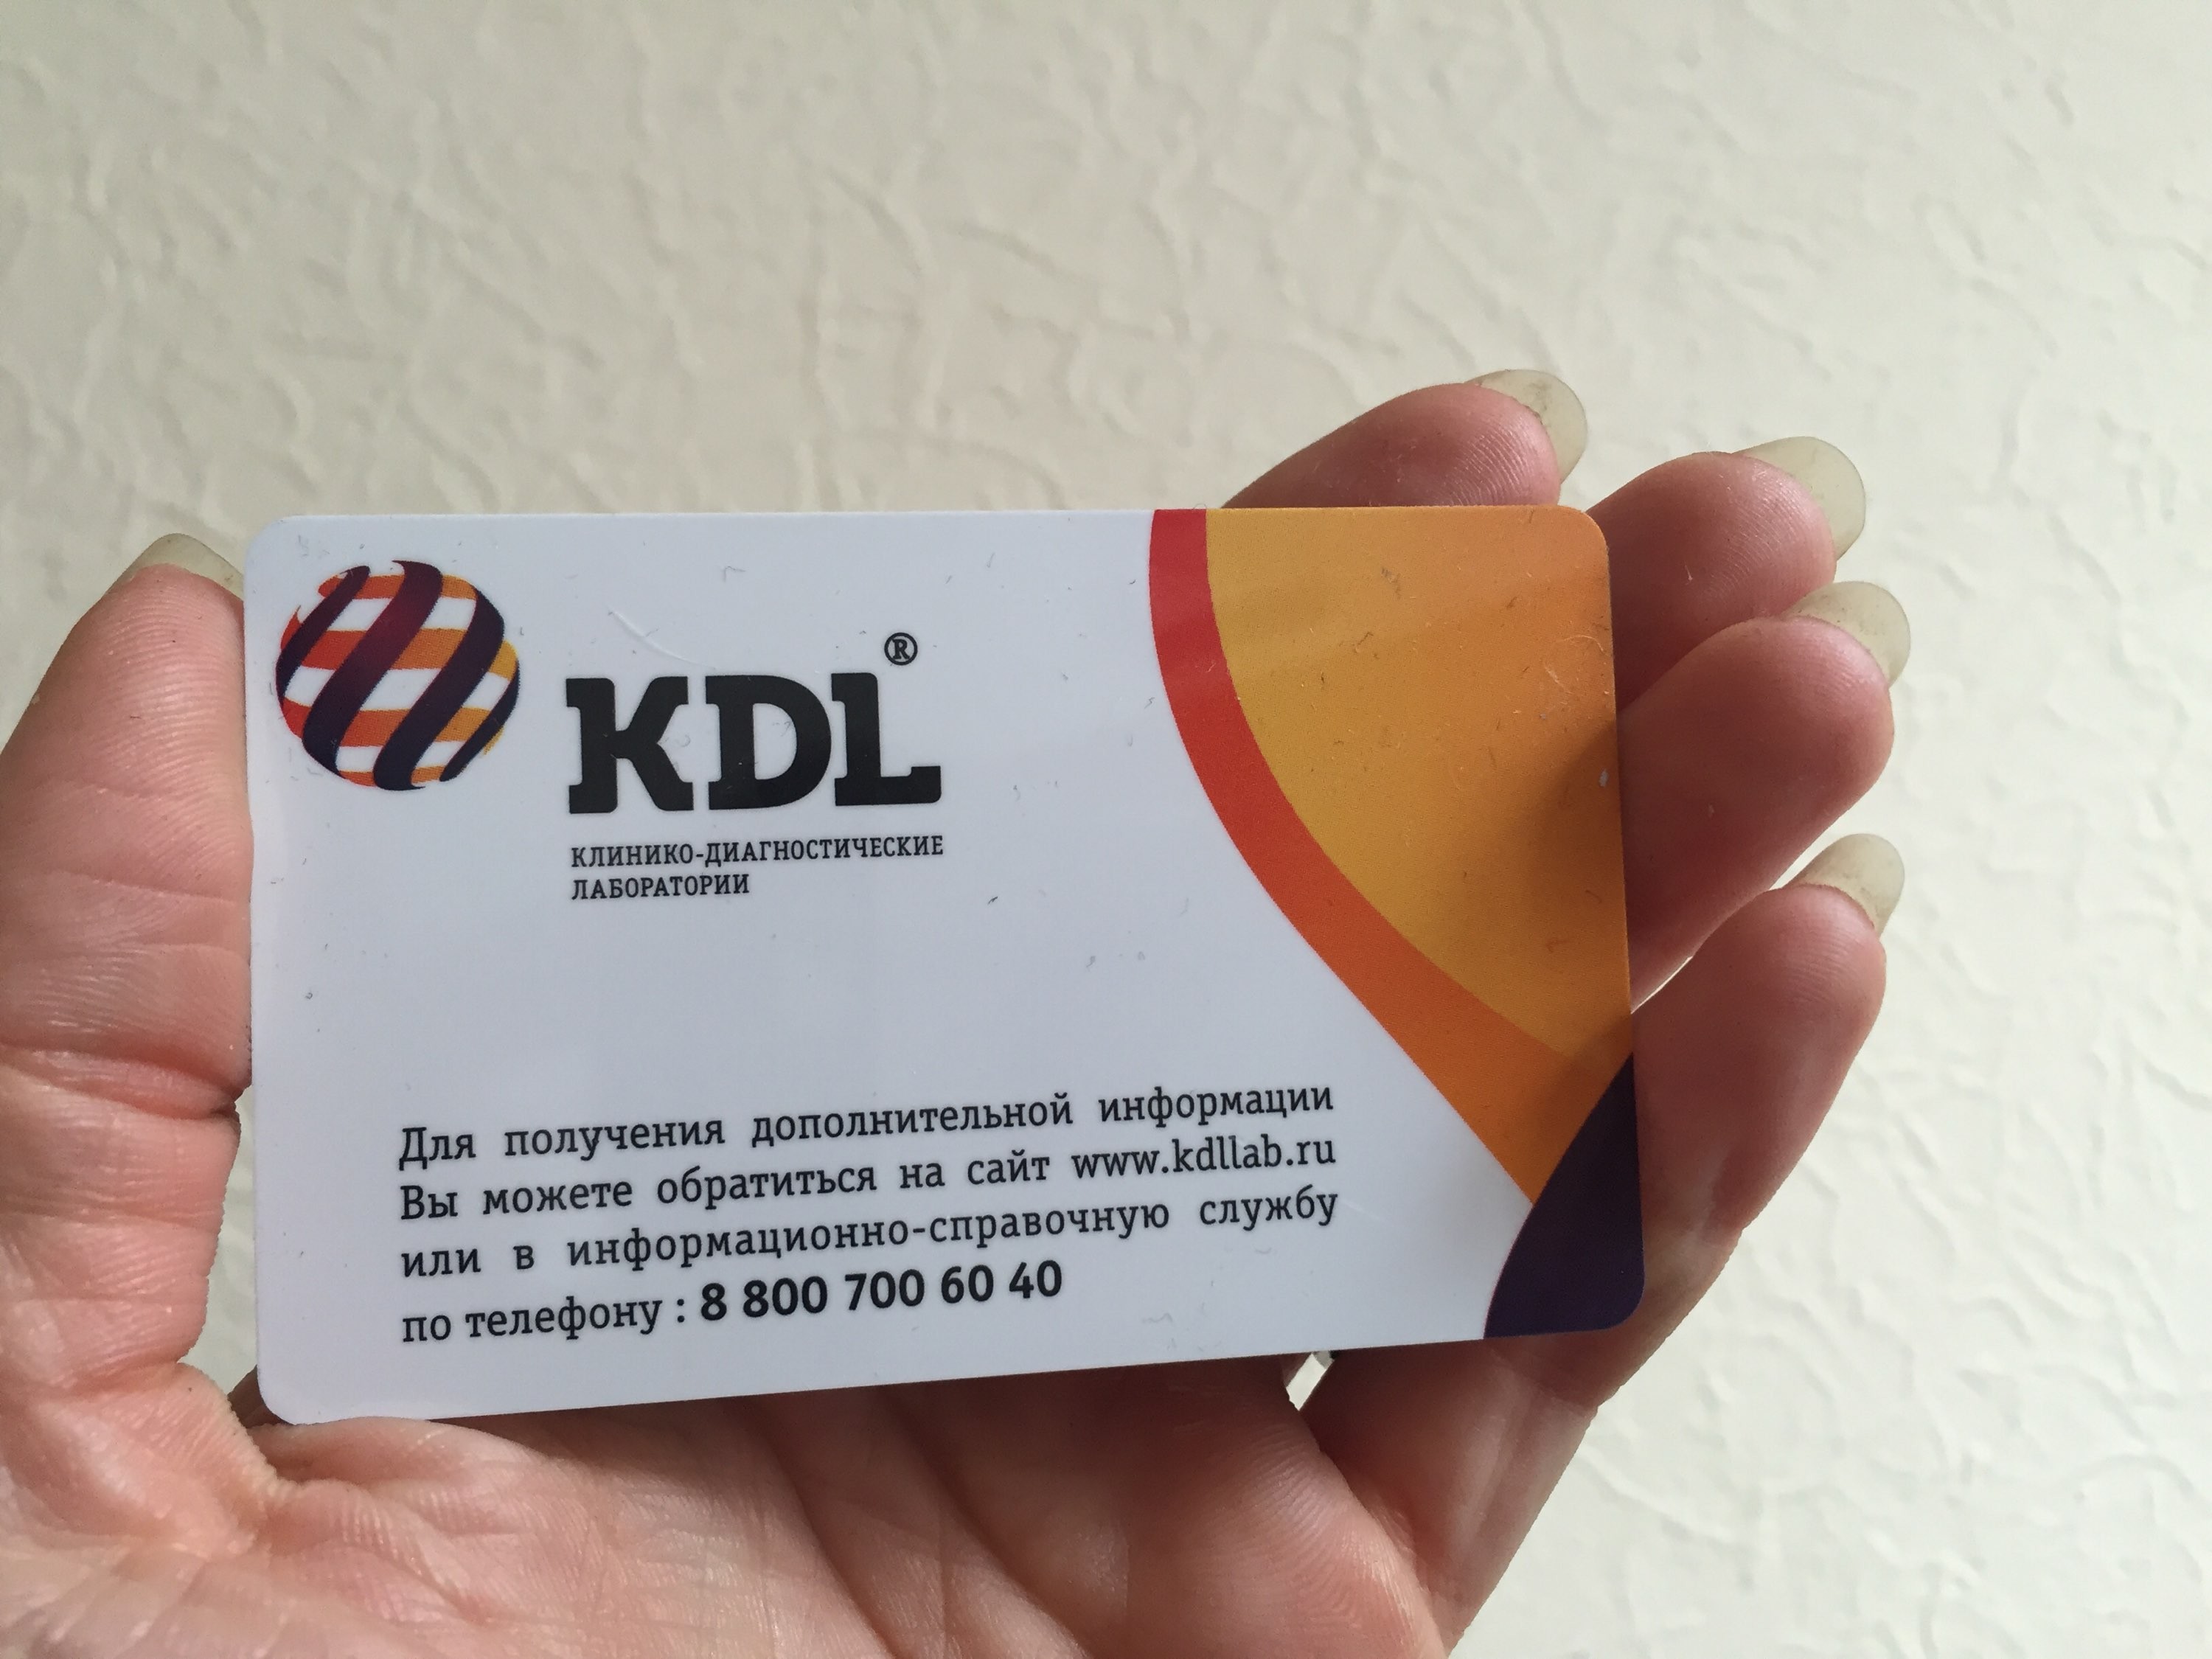 Кдл выезд. КДЛ. KDL лаборатория. KDL логотип. Логотип КДЛ лаборатория.